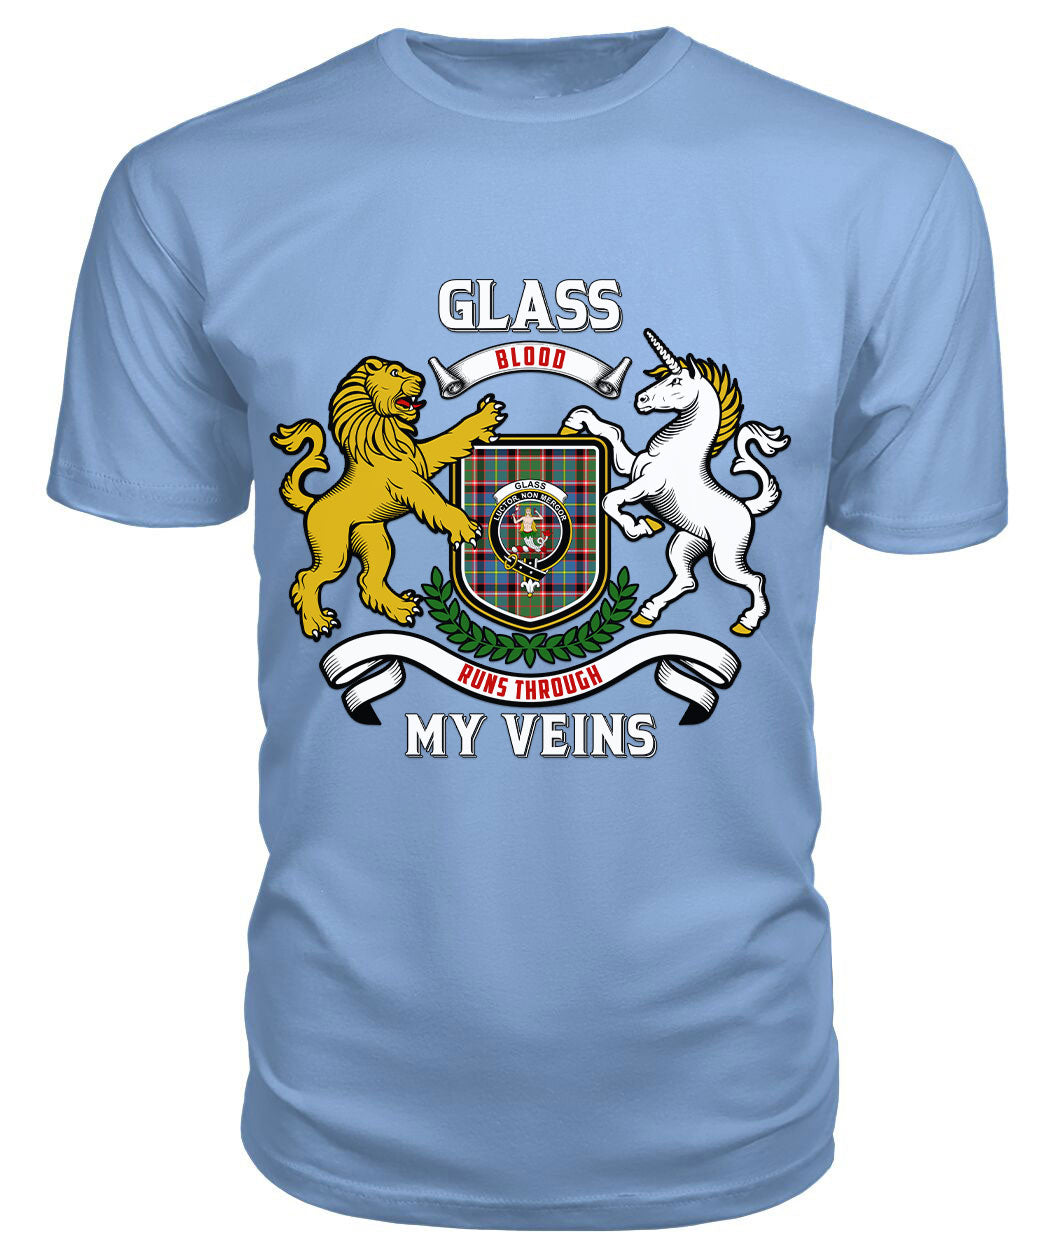 Glass Tartan Crest 2D T-shirt - Blood Runs Through My Veins Style